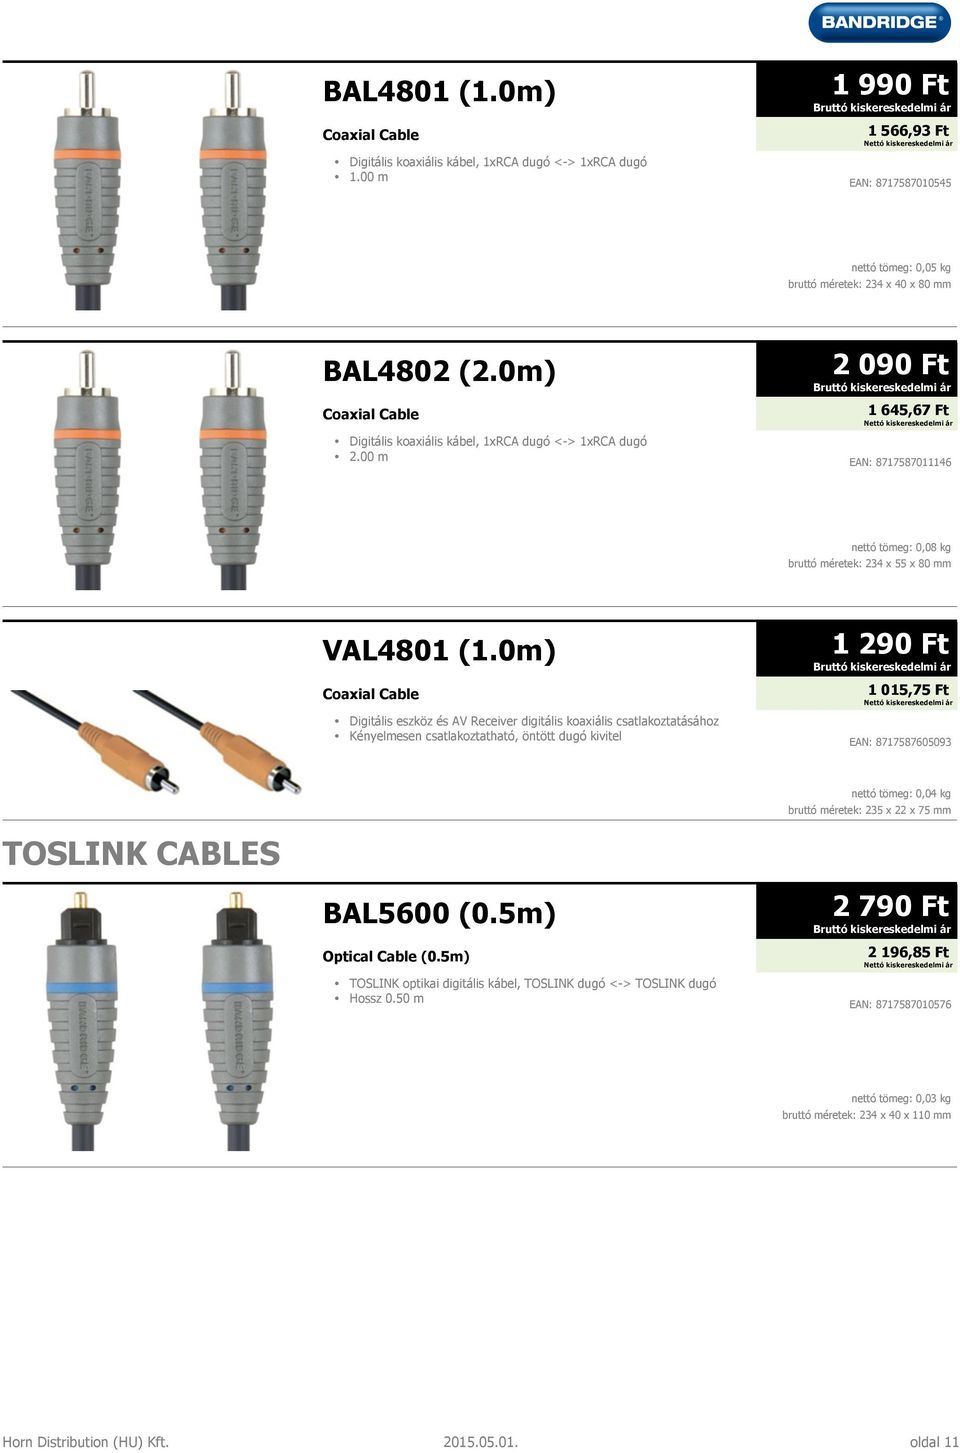 0m) Coaxial Cable Digitális eszköz és AV Receiver digitális koaxiális csatlakoztatásához 1 290 Ft 1 015,75 Ft EAN: 8717587605093 TOSLINK CABLES BAL5600 (0.5m) Optical Cable (0.